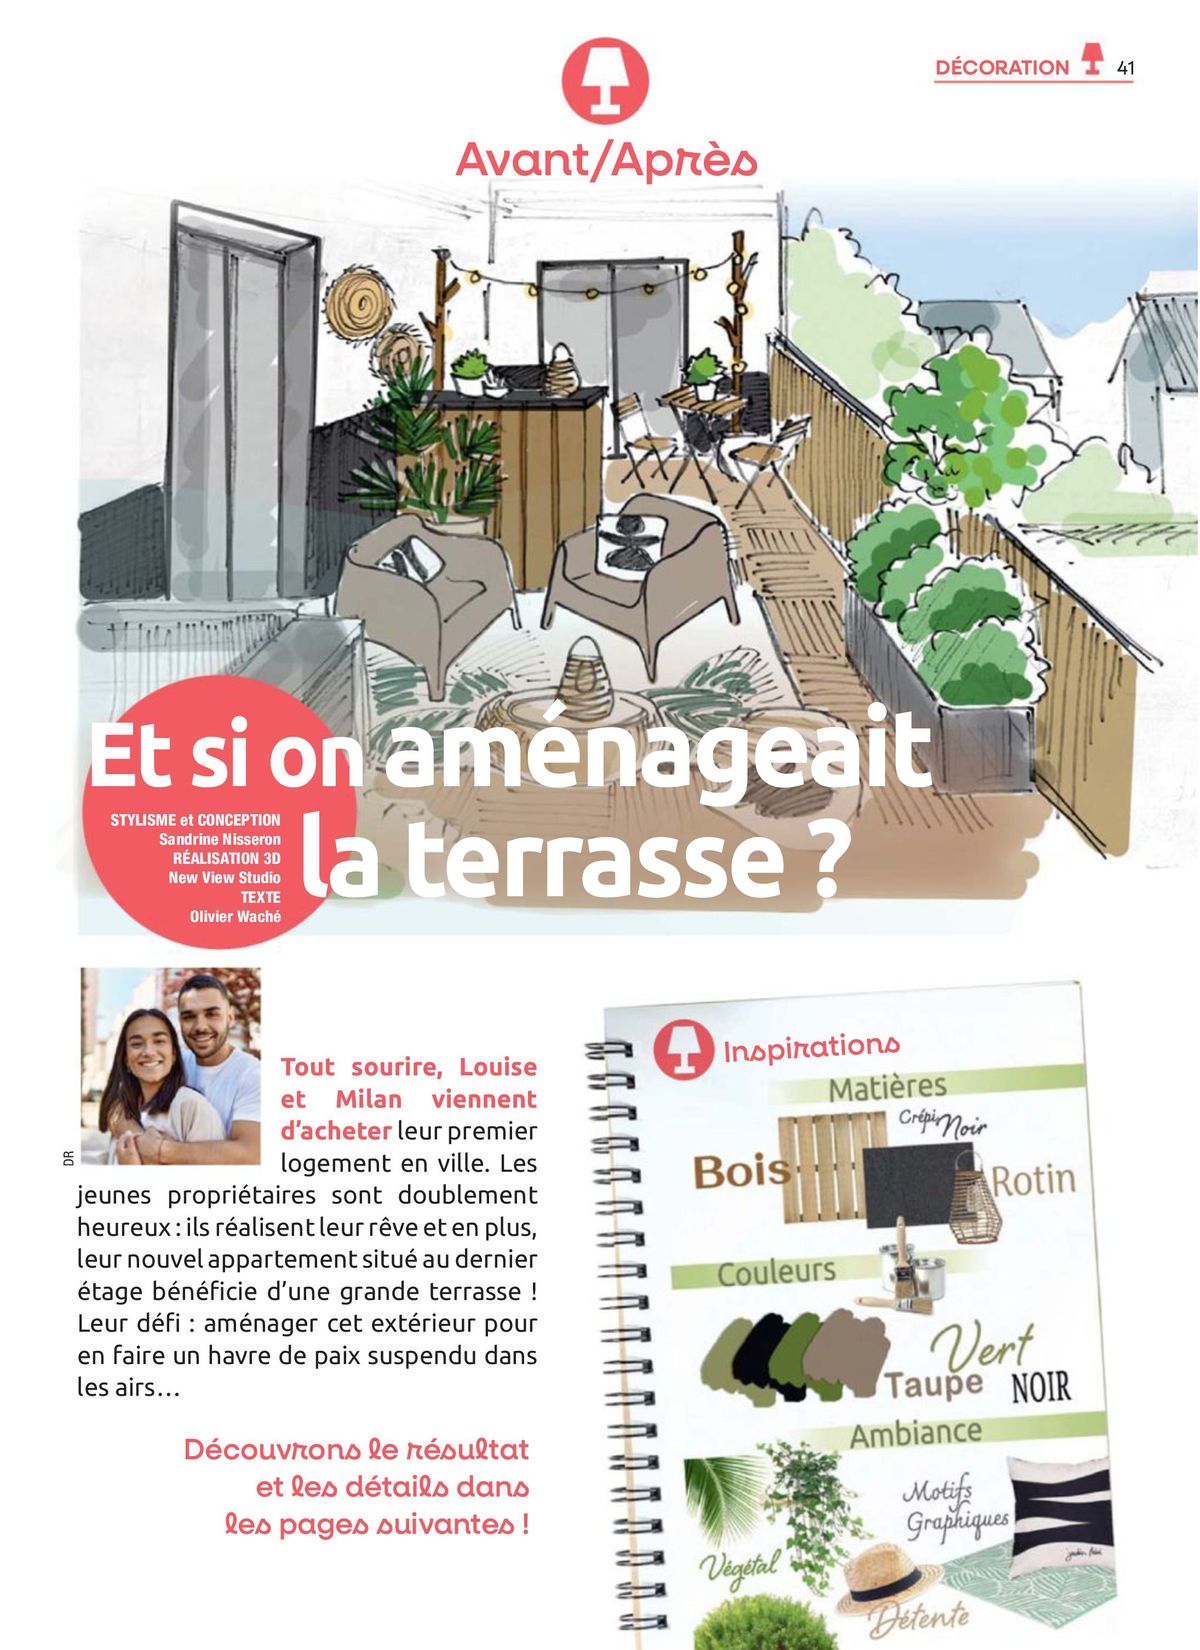 Catalogue Feuilletez Entre Voisins, page 00041